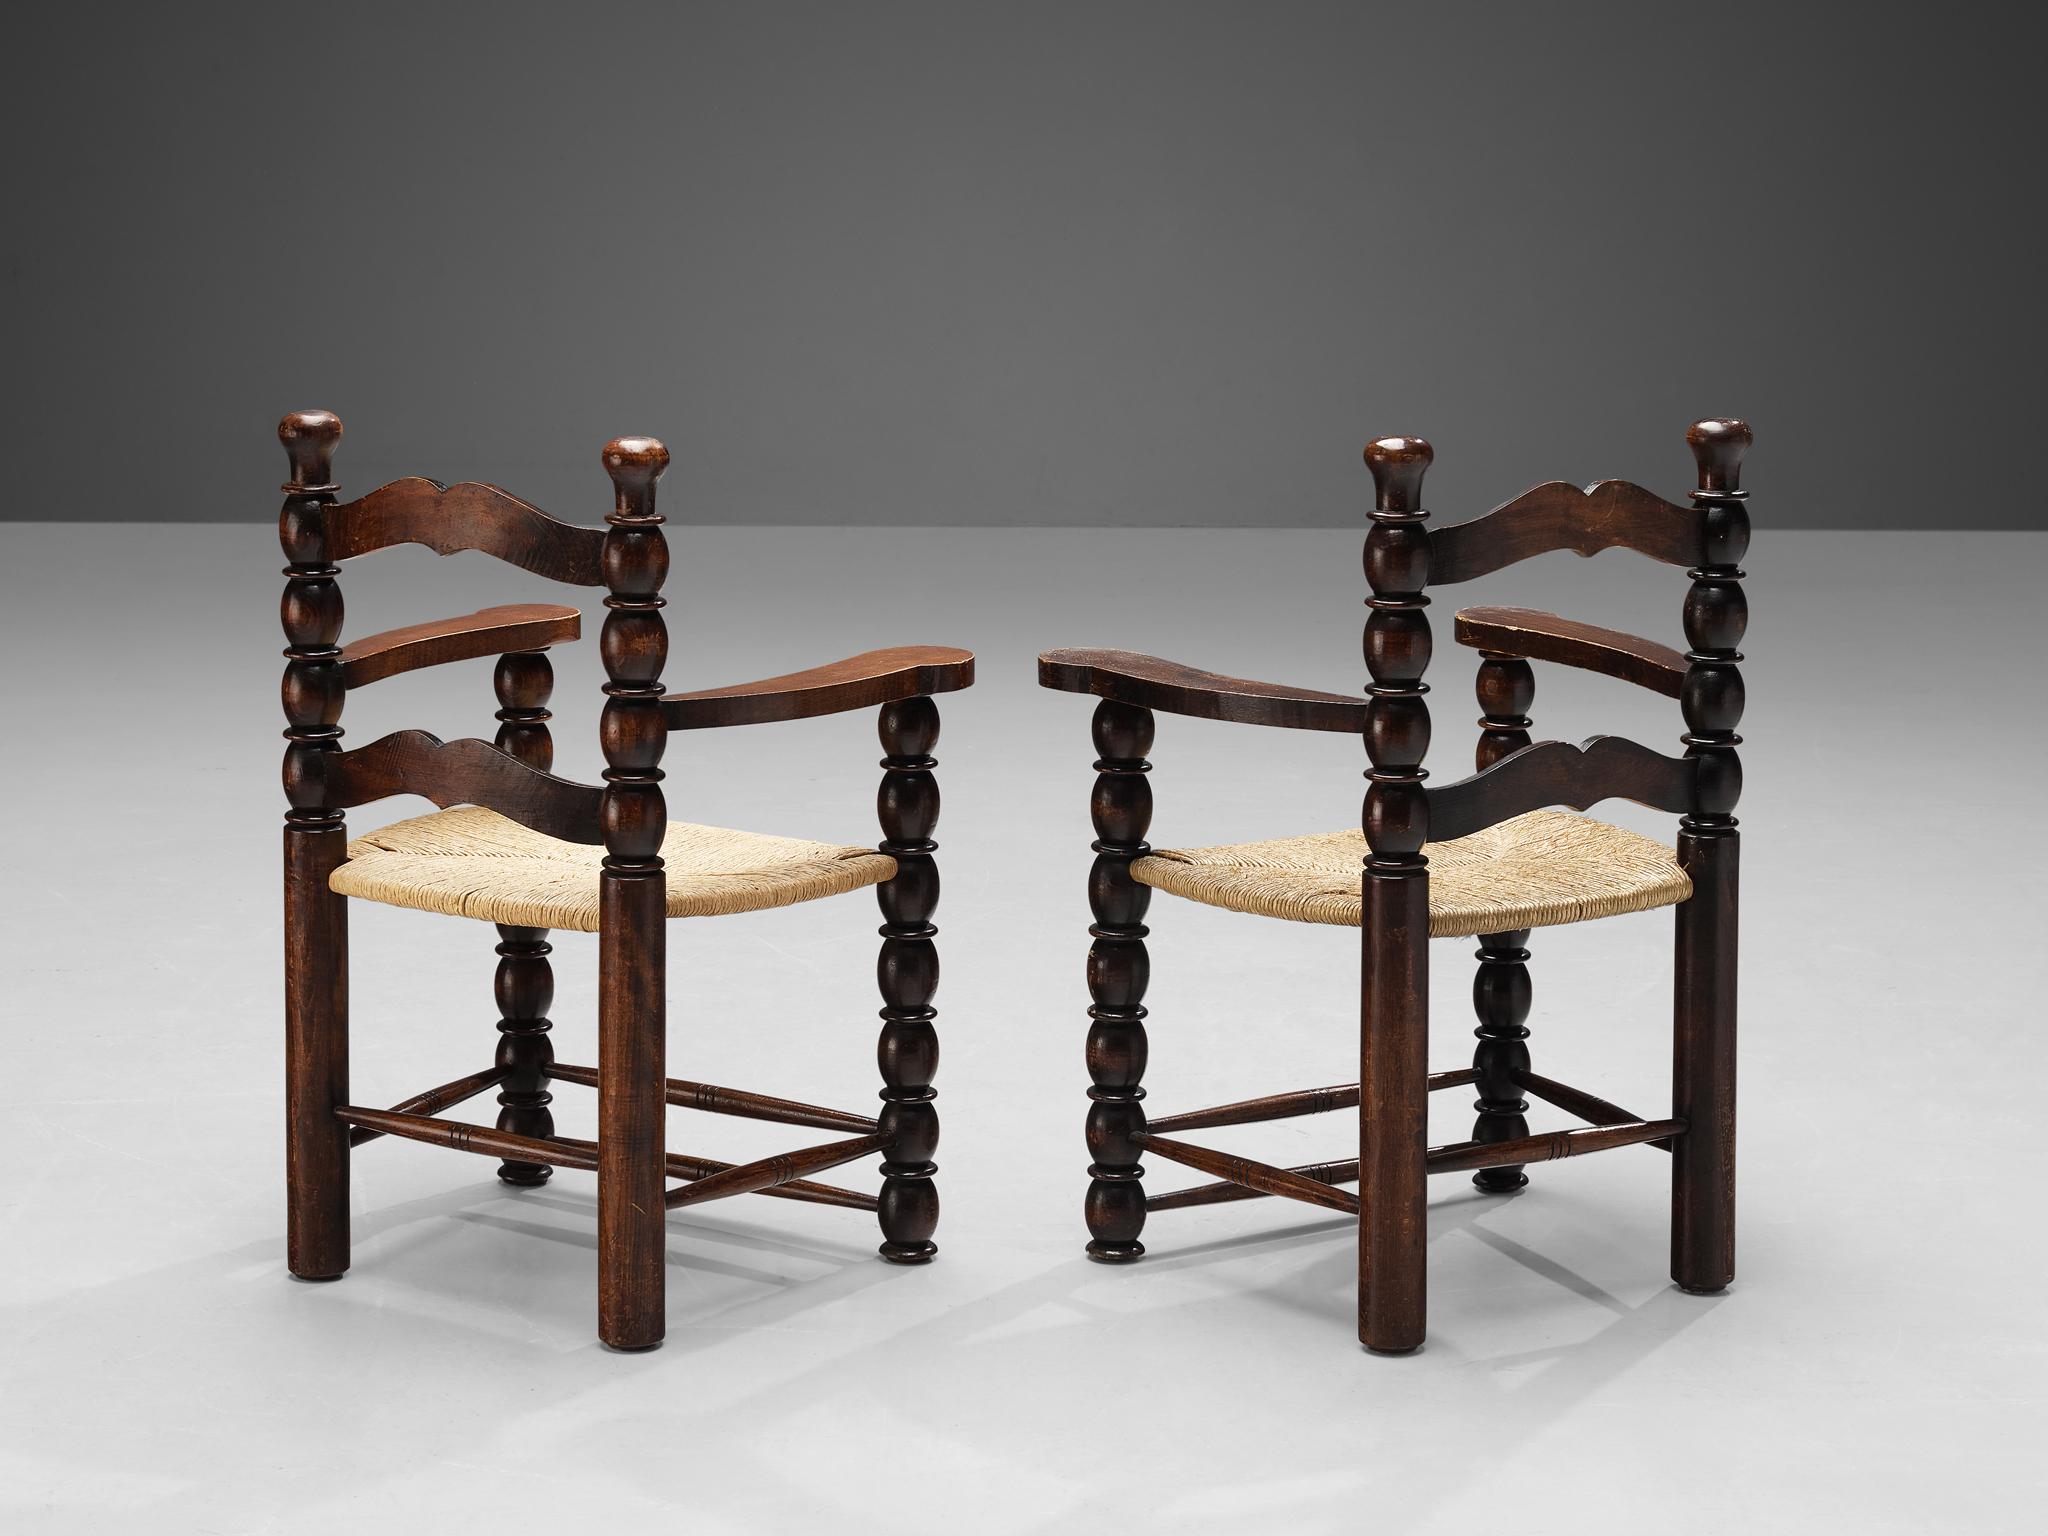 Paar Sessel, gebeiztes Holz, Binsen, Frankreich, 1940er Jahre.

Dekoratives Paar französischer Sessel. Der gebeizte Holzrahmen weist zahlreiche geschnitzte Details auf, die sich zu einem komplexen Ganzen zusammenfügen. Geschnitzte Linien und runde